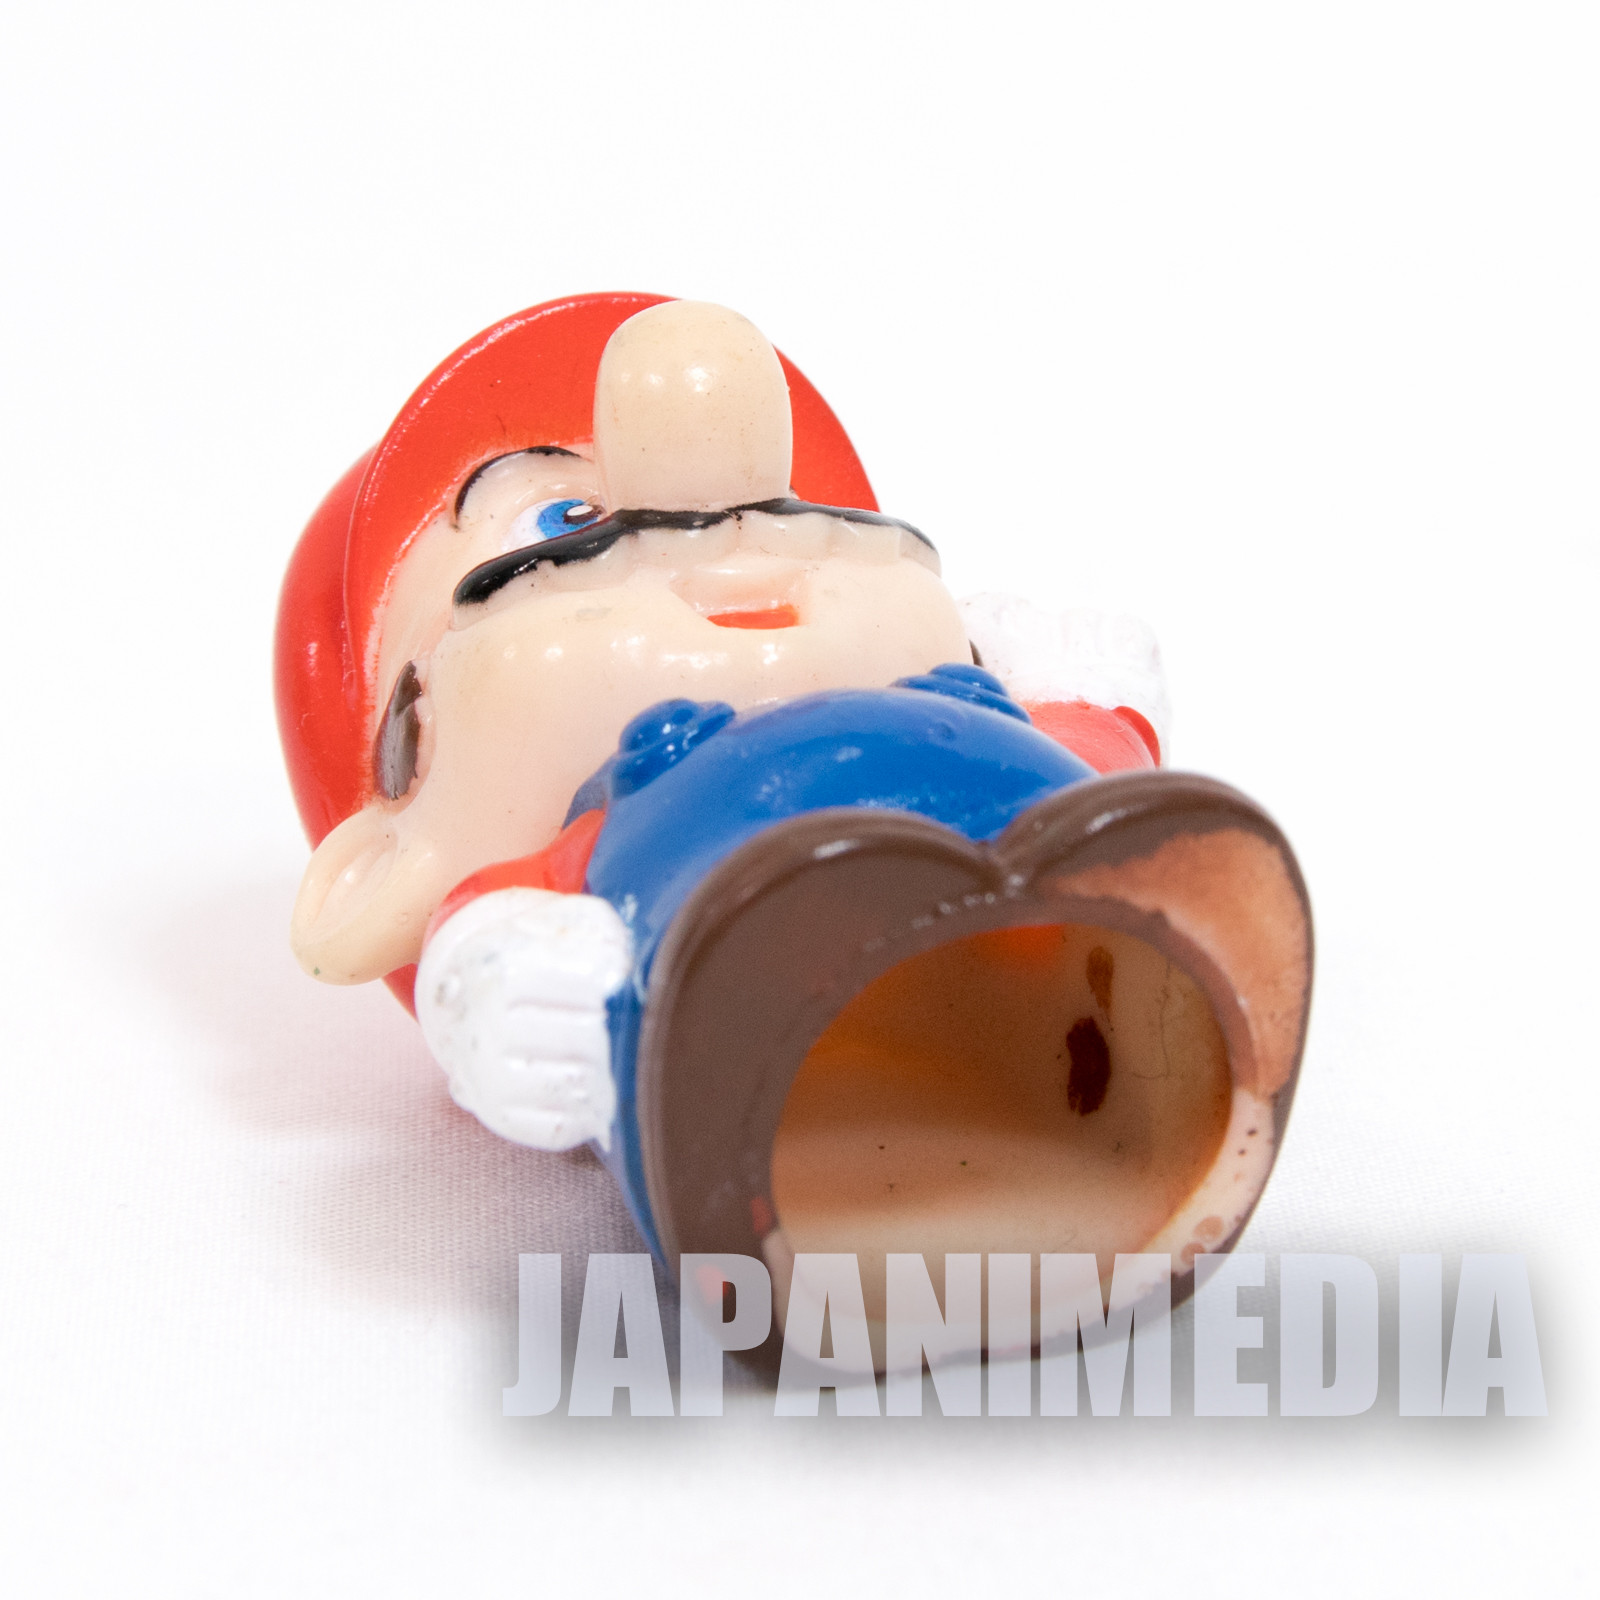 Retro Super Mario Bros. Mario Finger Puppet Figure / Nintendo JAPAN NES